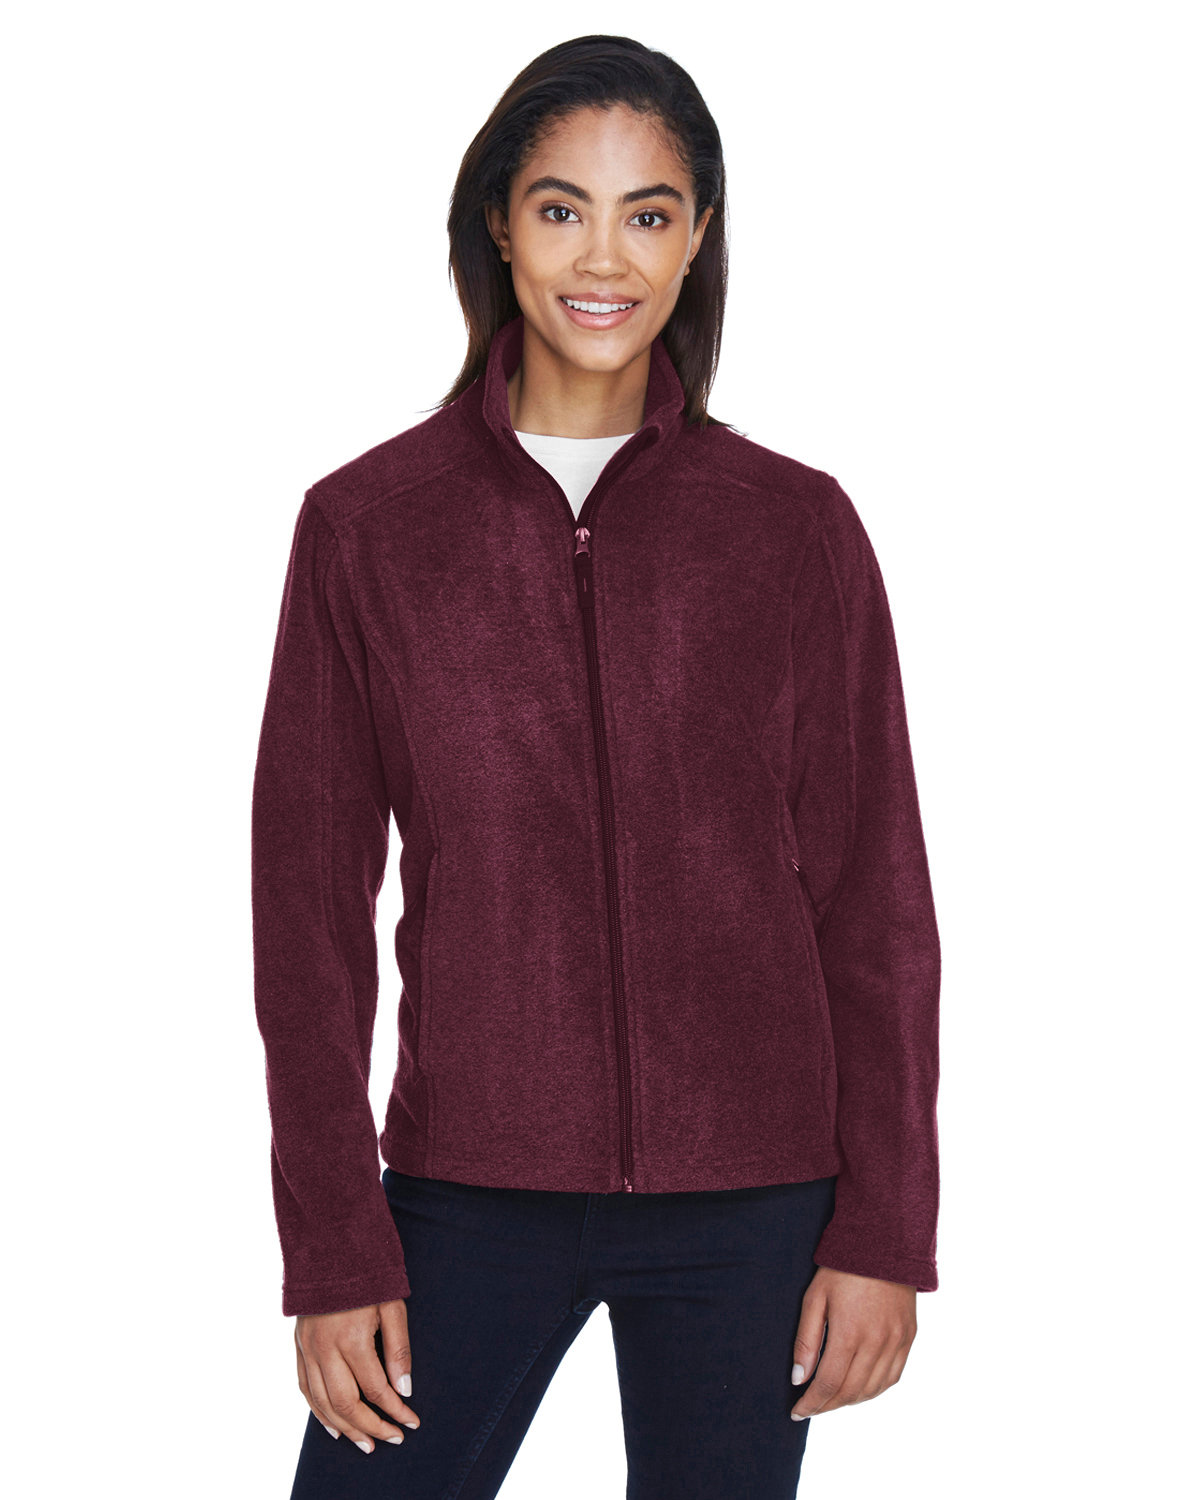 Core 365 Ladies\' Journey Fleece Jacket